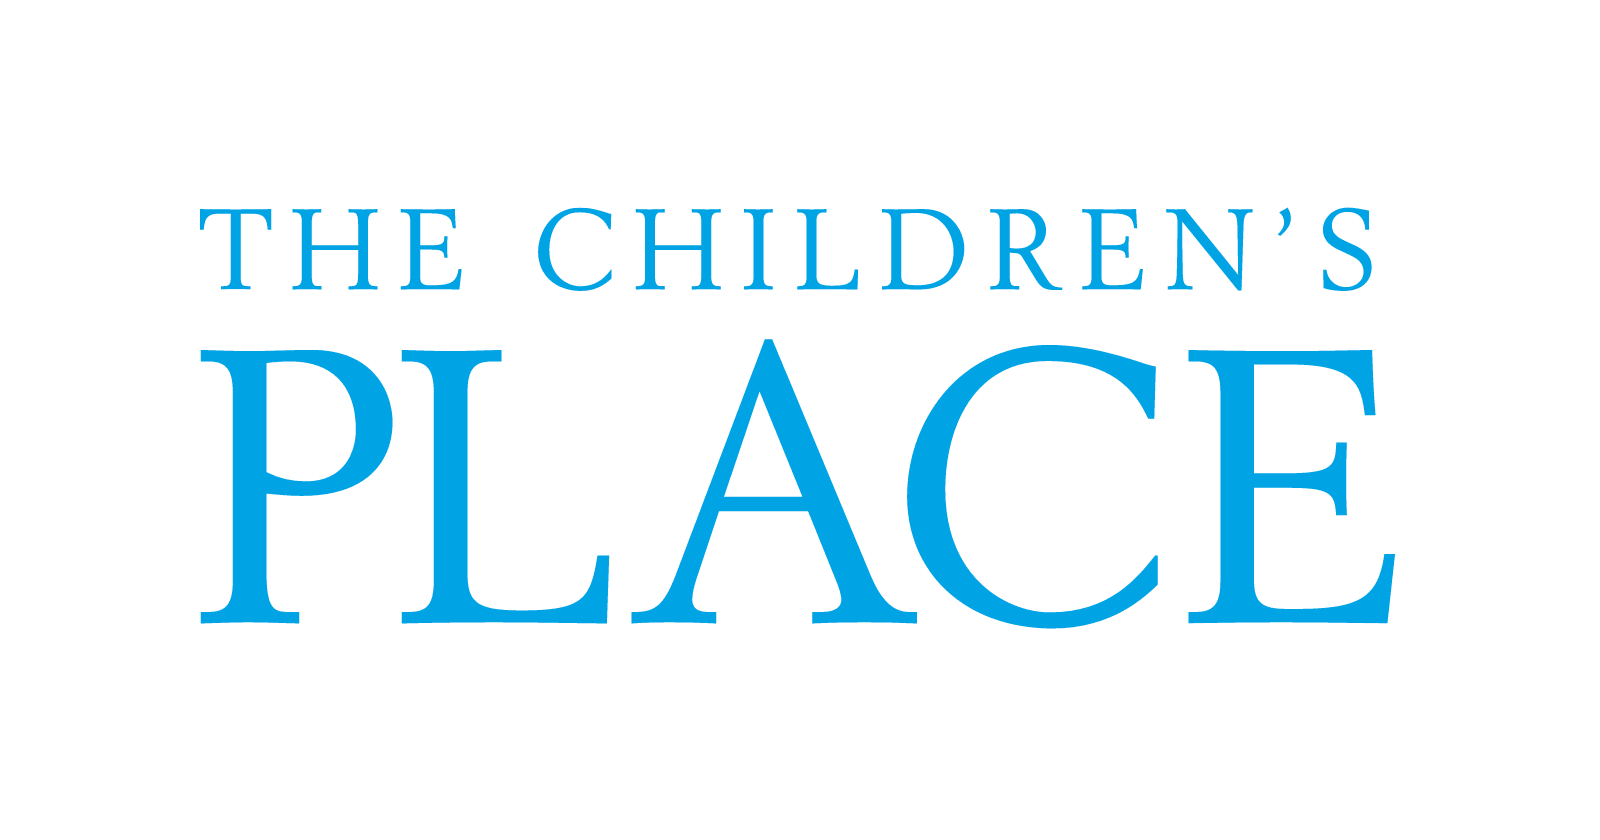 www.childrensplace.com